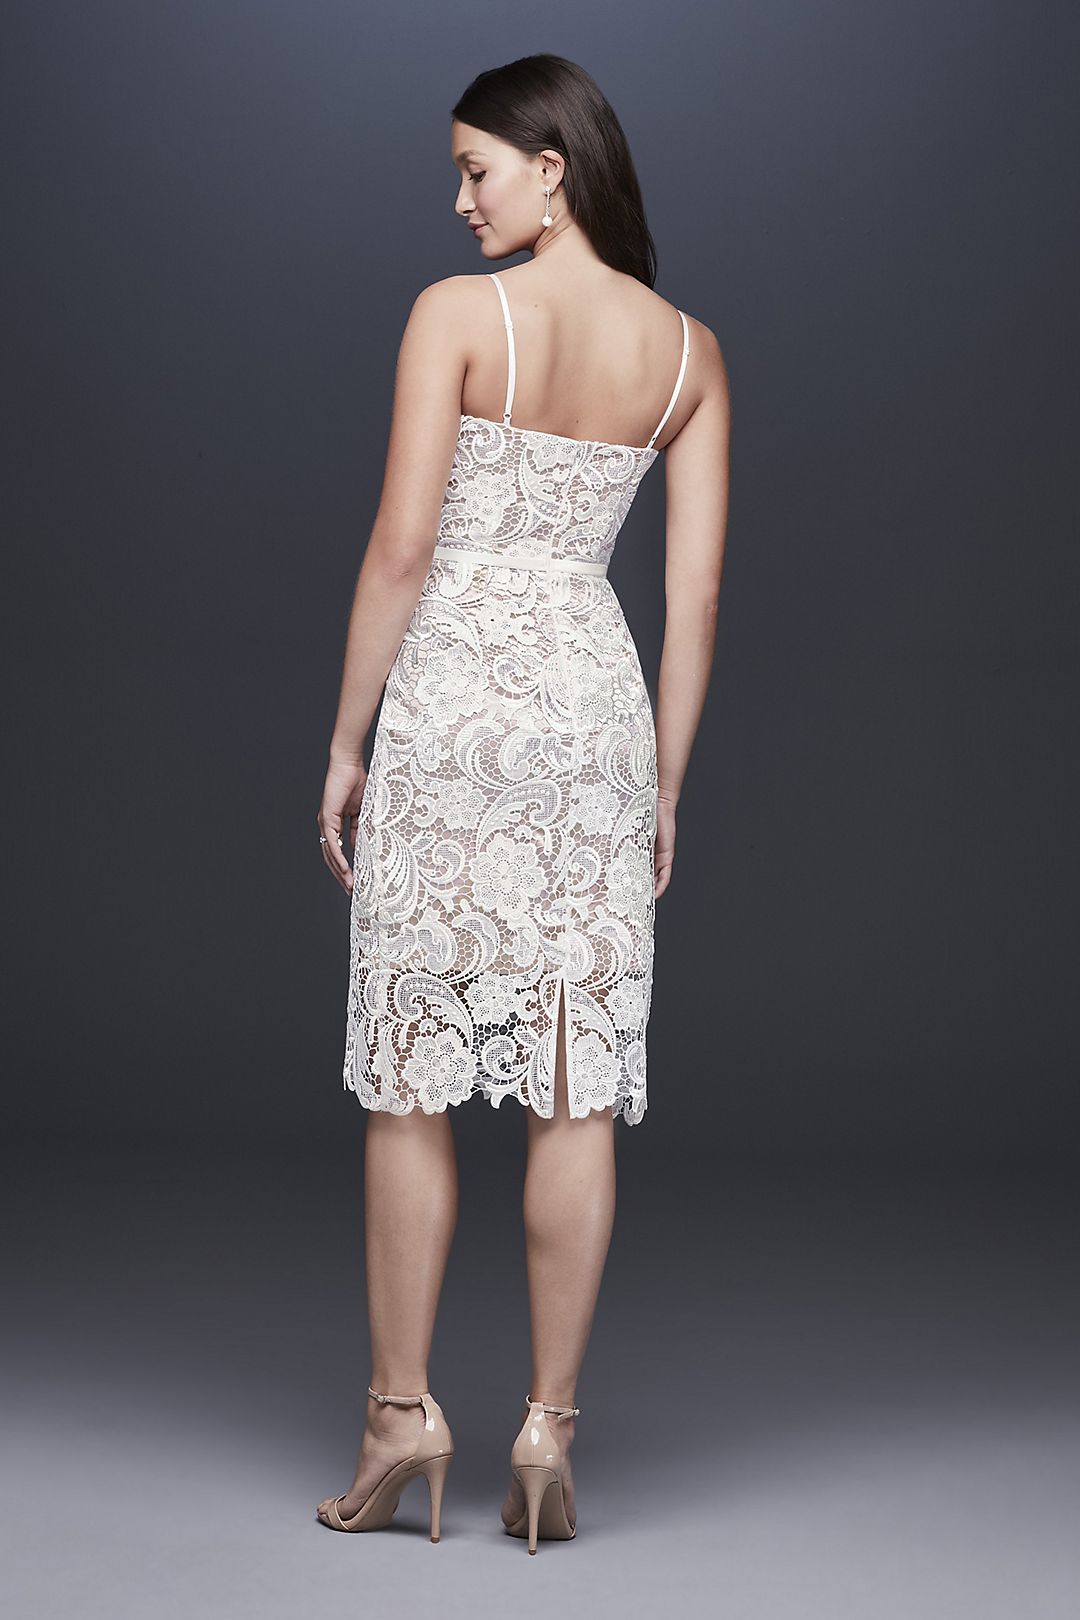 Paisley Lace Illusion Sheath Dress with Sheer Hem Image 4